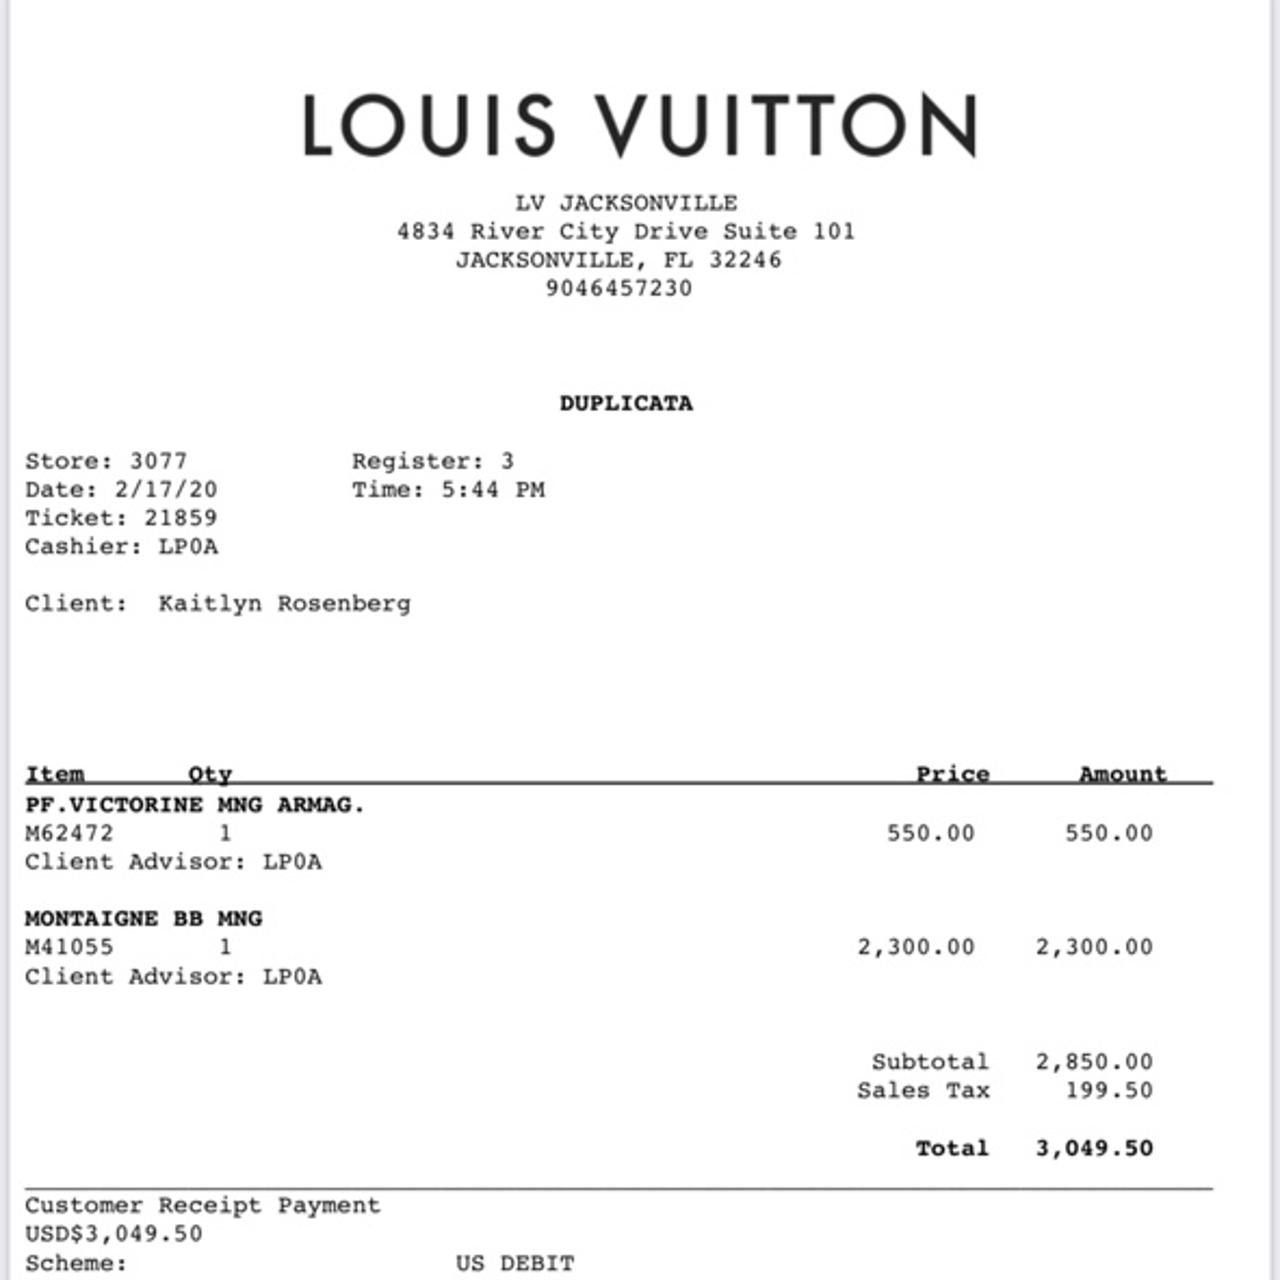 Louis Vuitton  Jacksonville FL